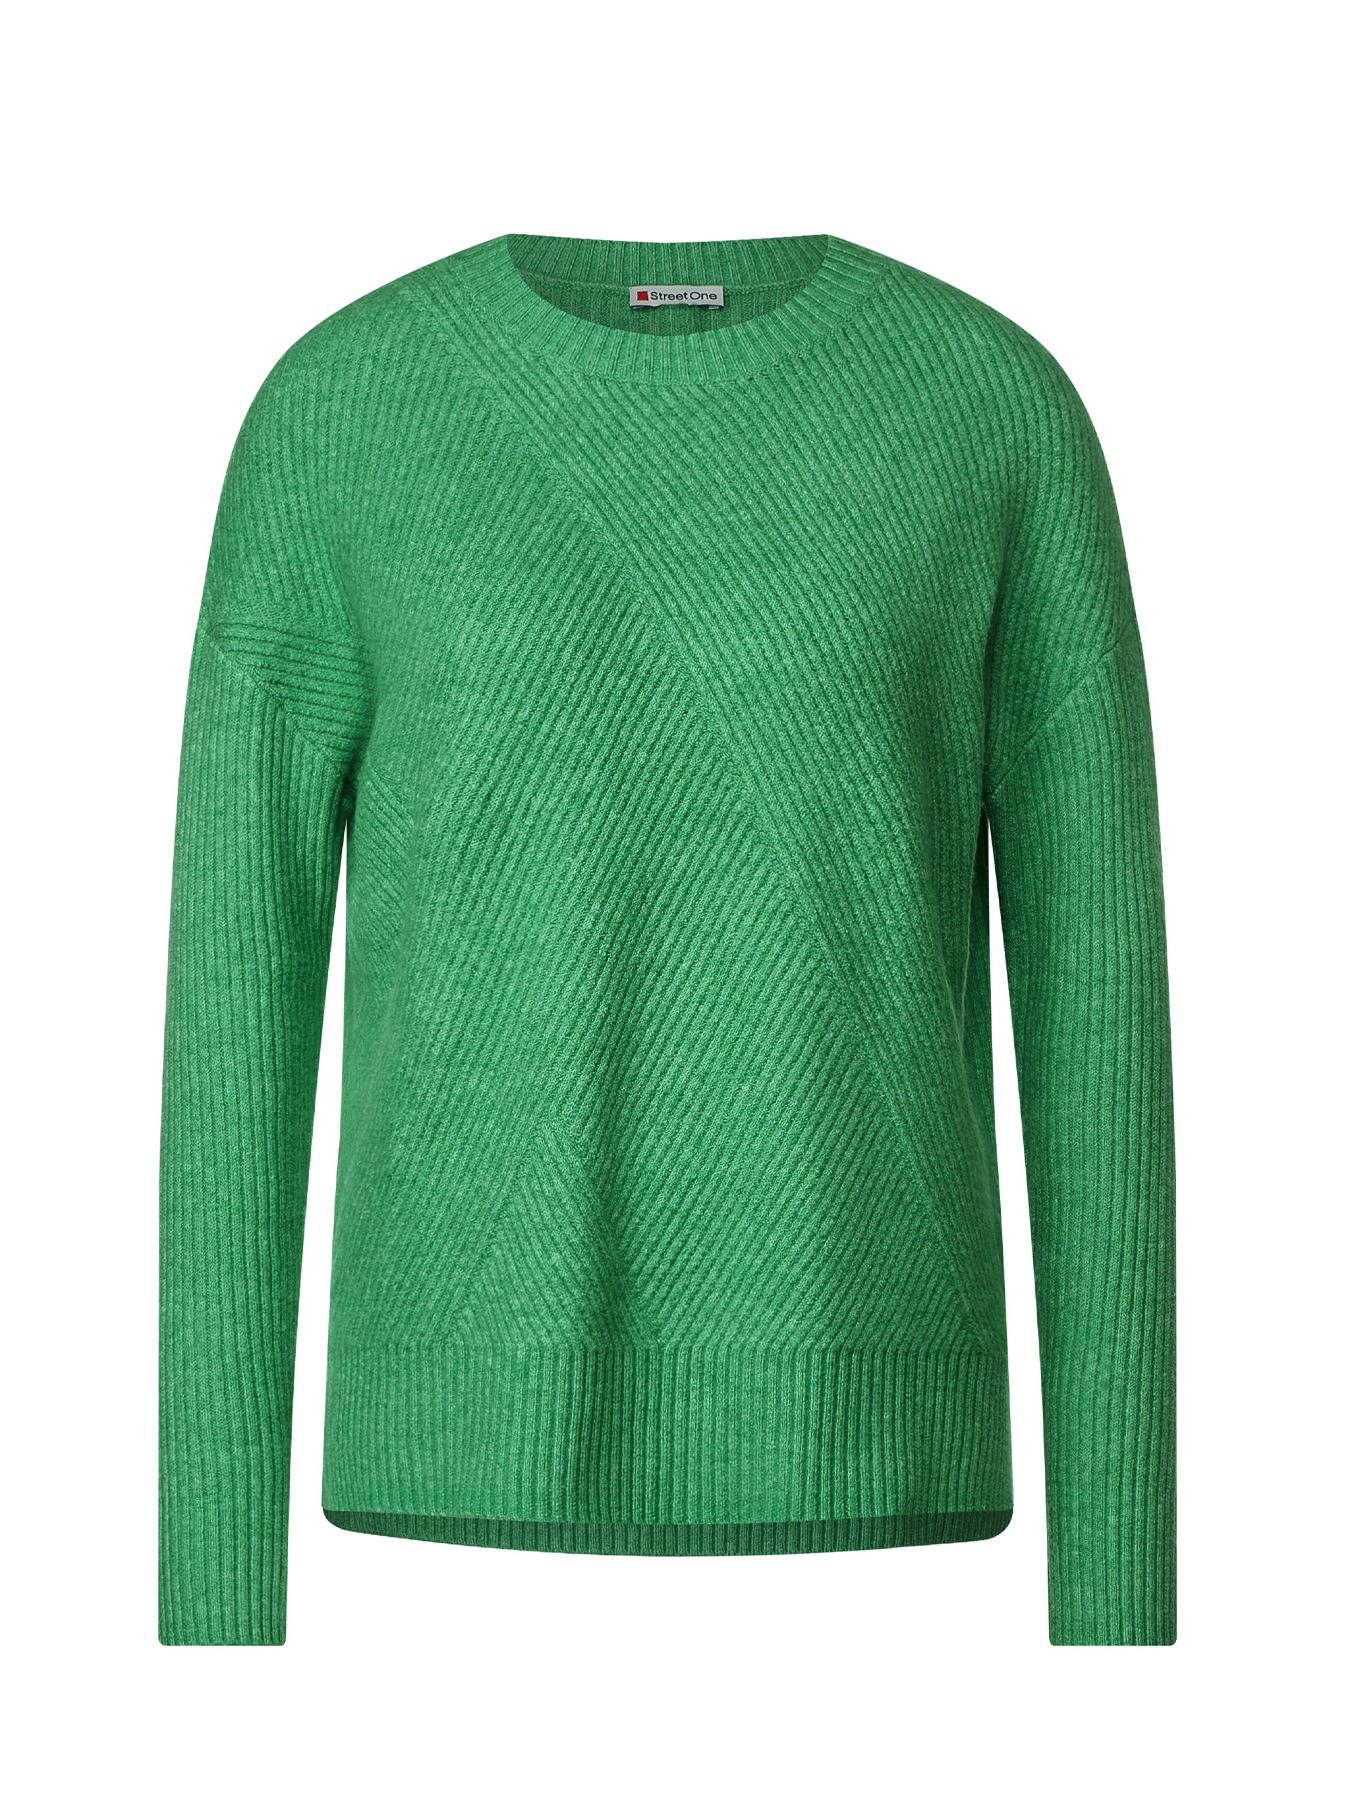 Street-One Ltd qr round neck sweater GREEN 00106707-GRE